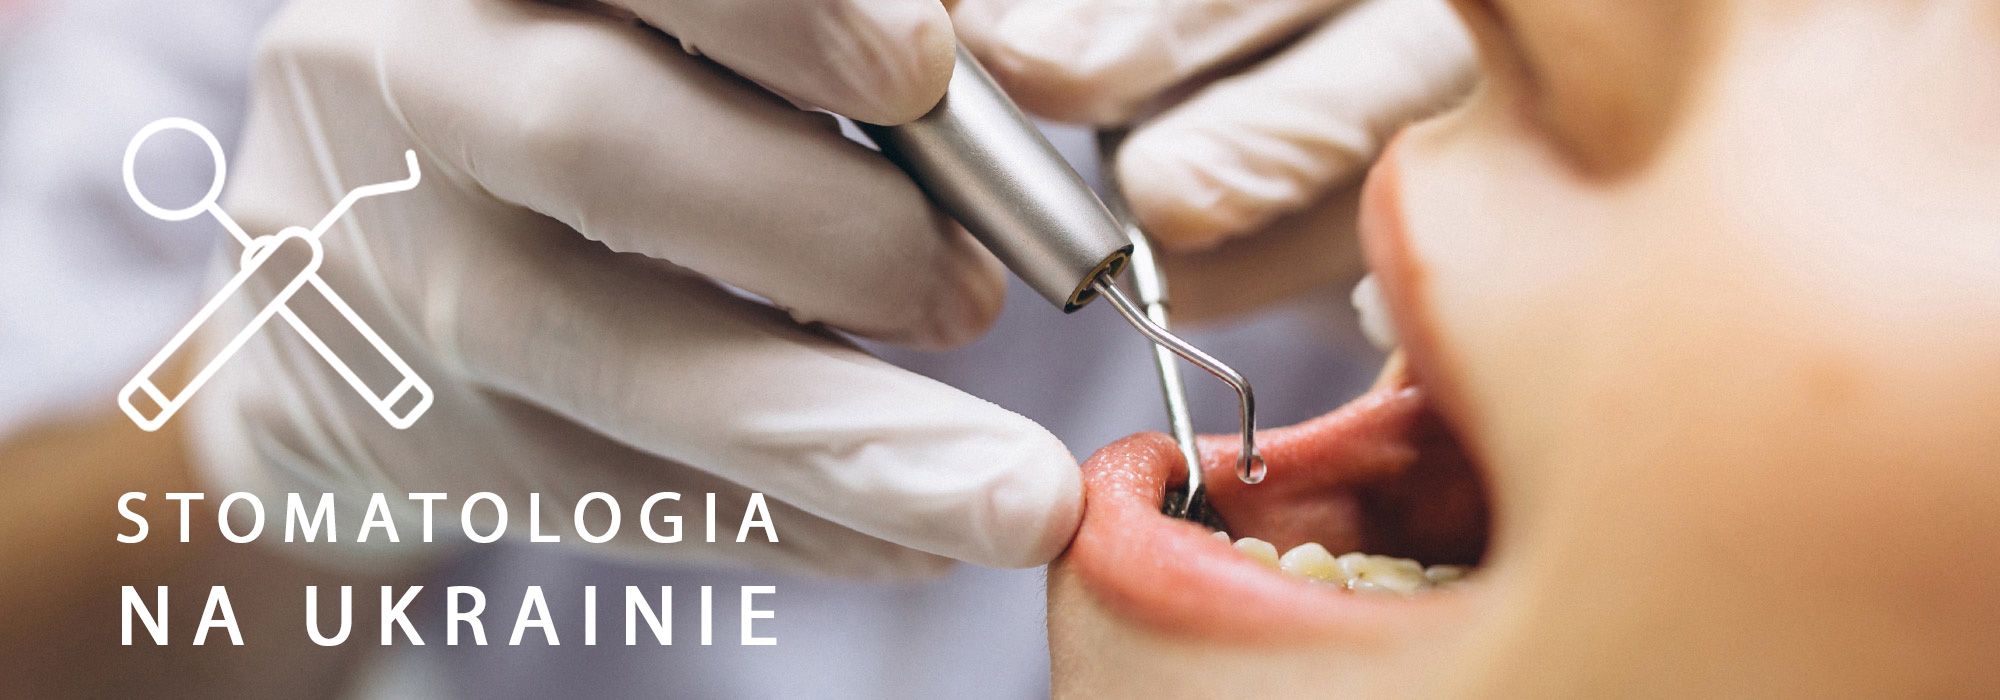 Stomatologia na Ukrainie - Studiuj stomatologię na Ukrainie